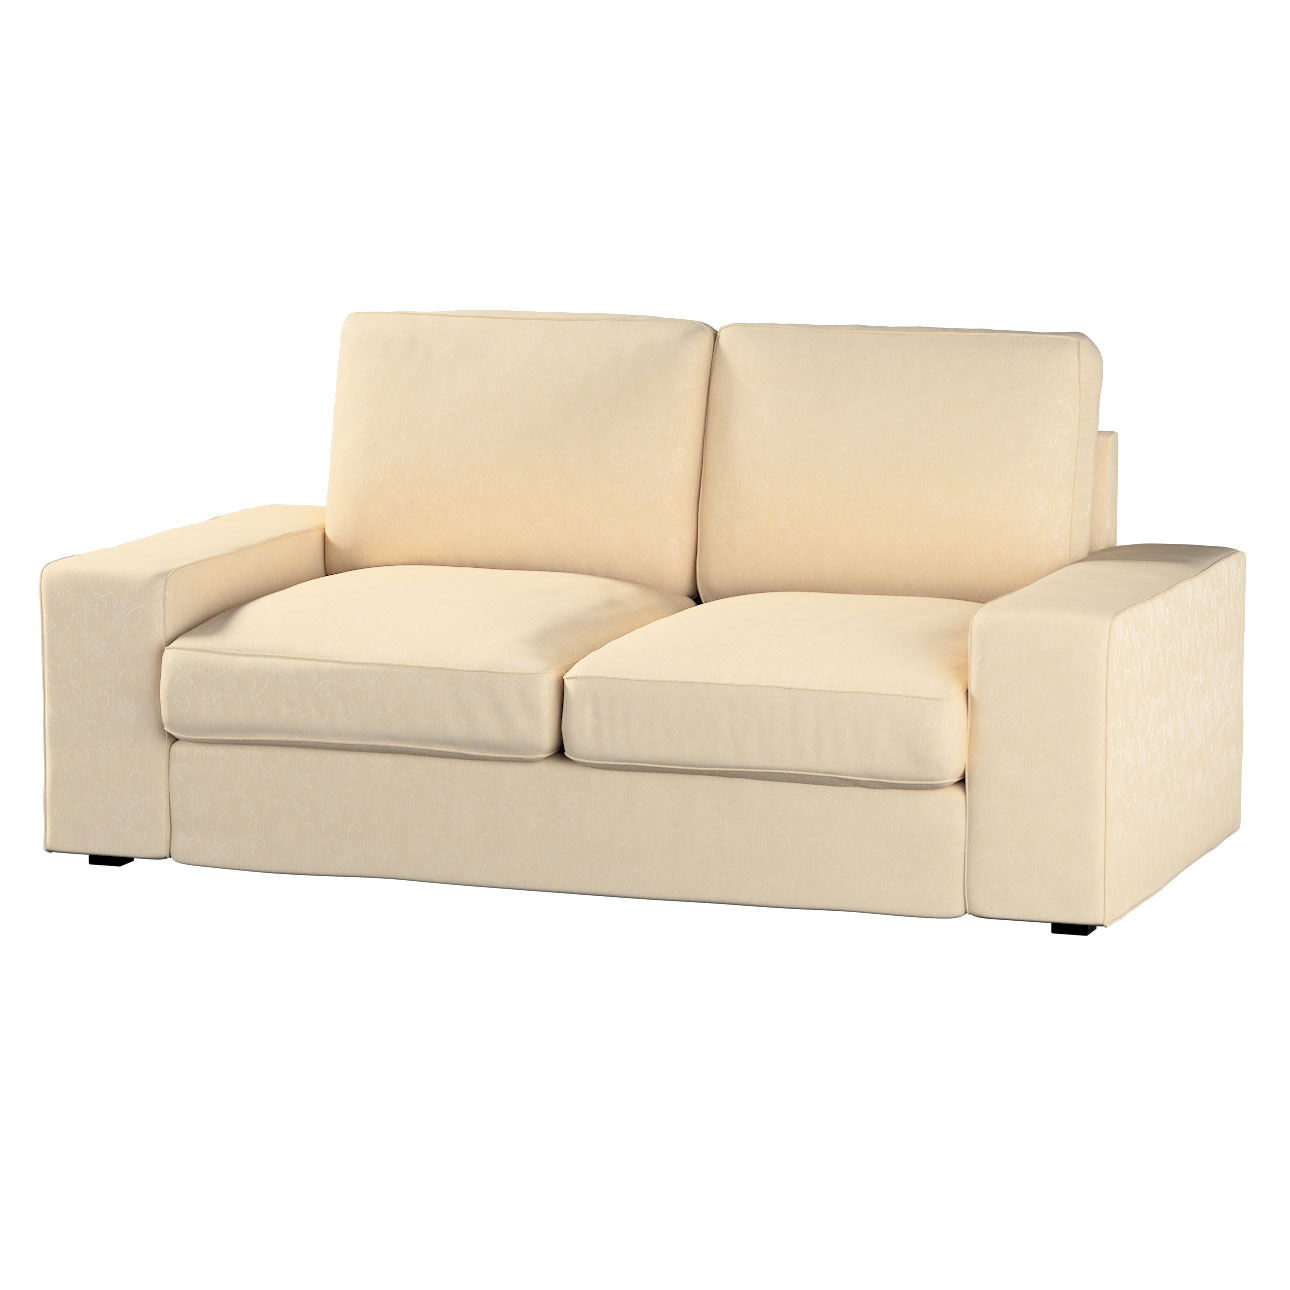 Bezug für Kivik 2-Sitzer Sofa, ecru, Bezug für Sofa Kivik 2-Sitzer, Living günstig online kaufen